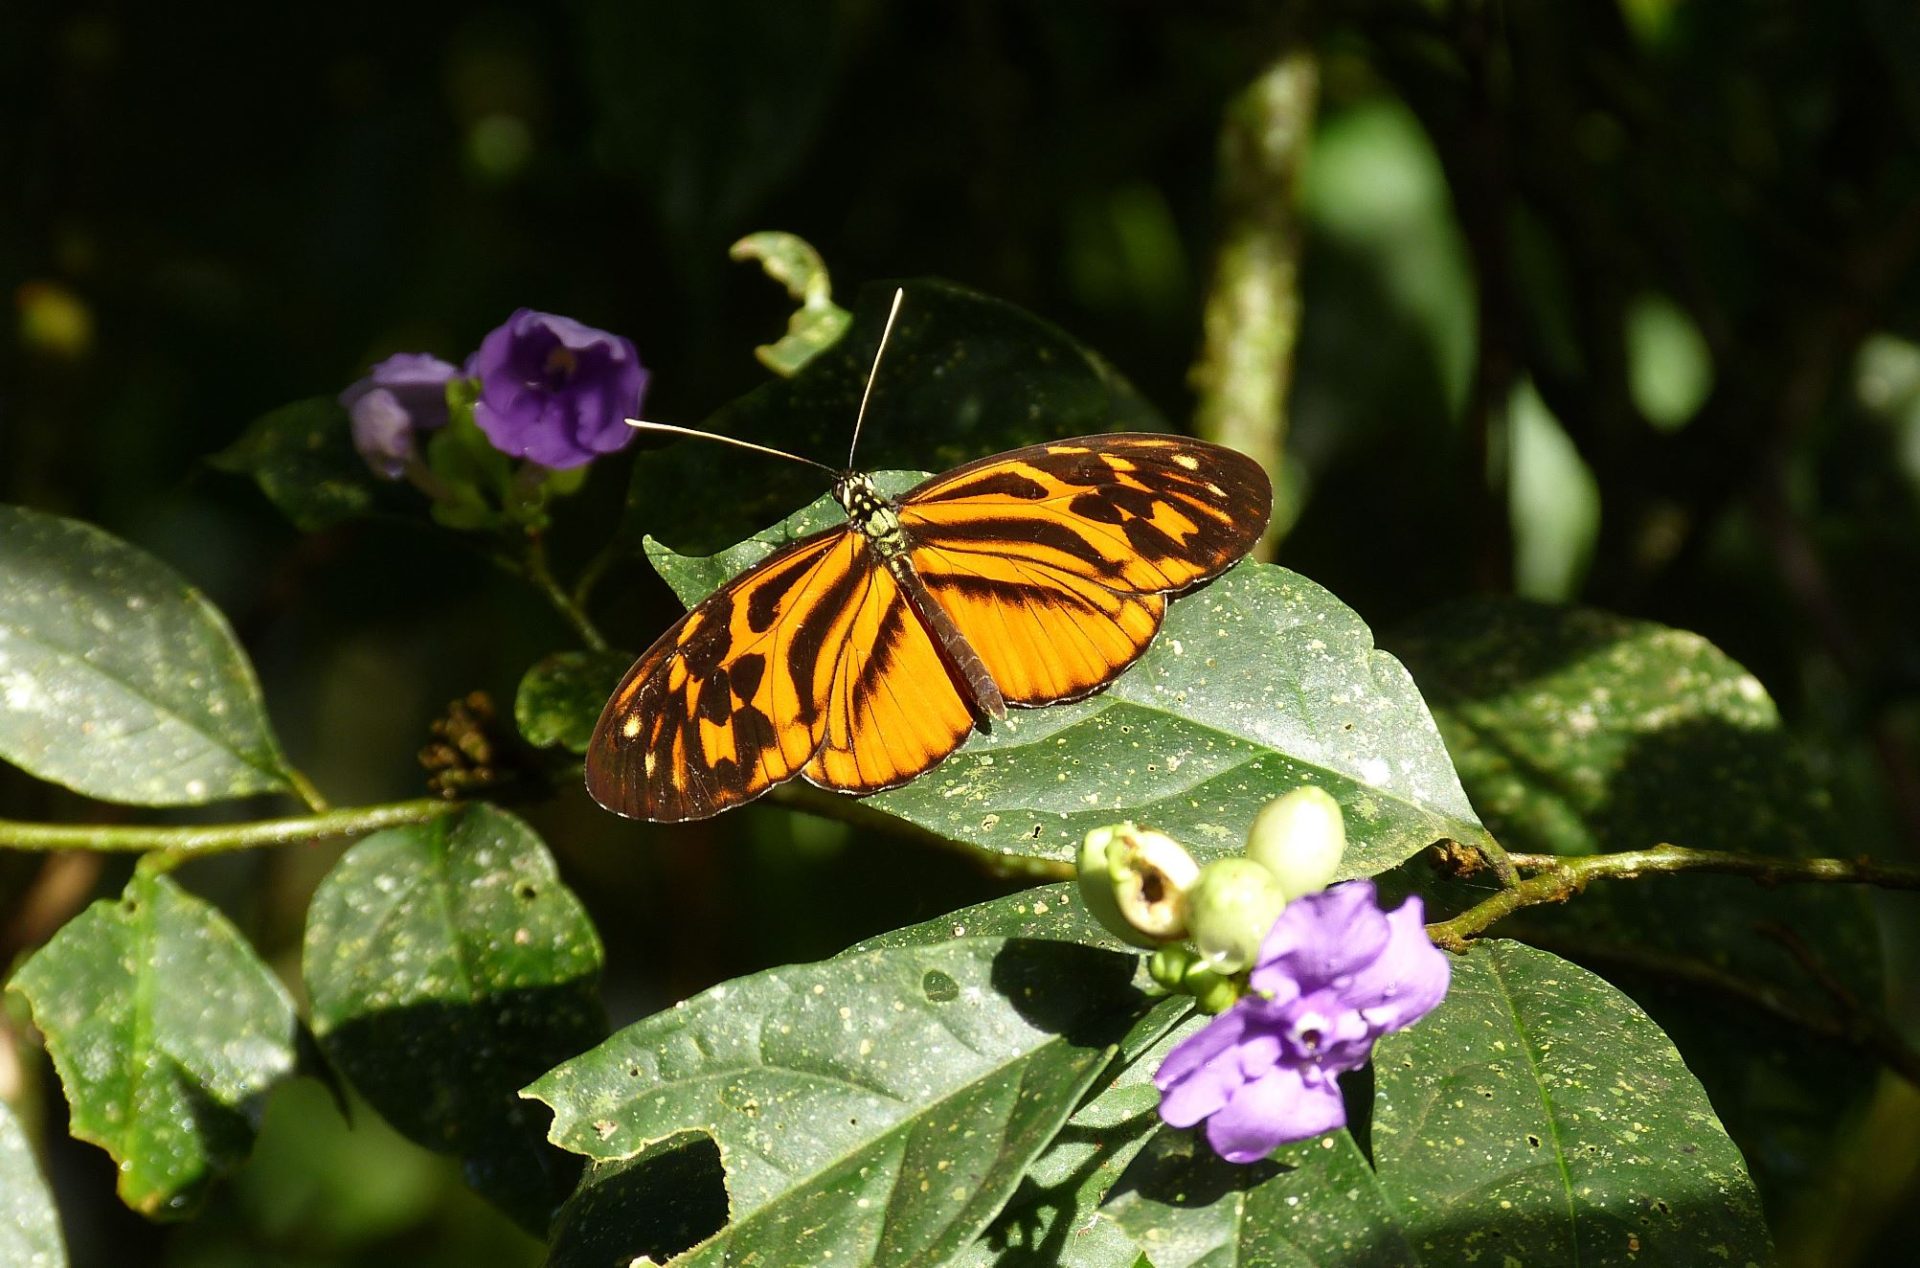 Imagen cedida de una especie parental de mariposa Heliconius pardalinus. EFE/Andrew Neild